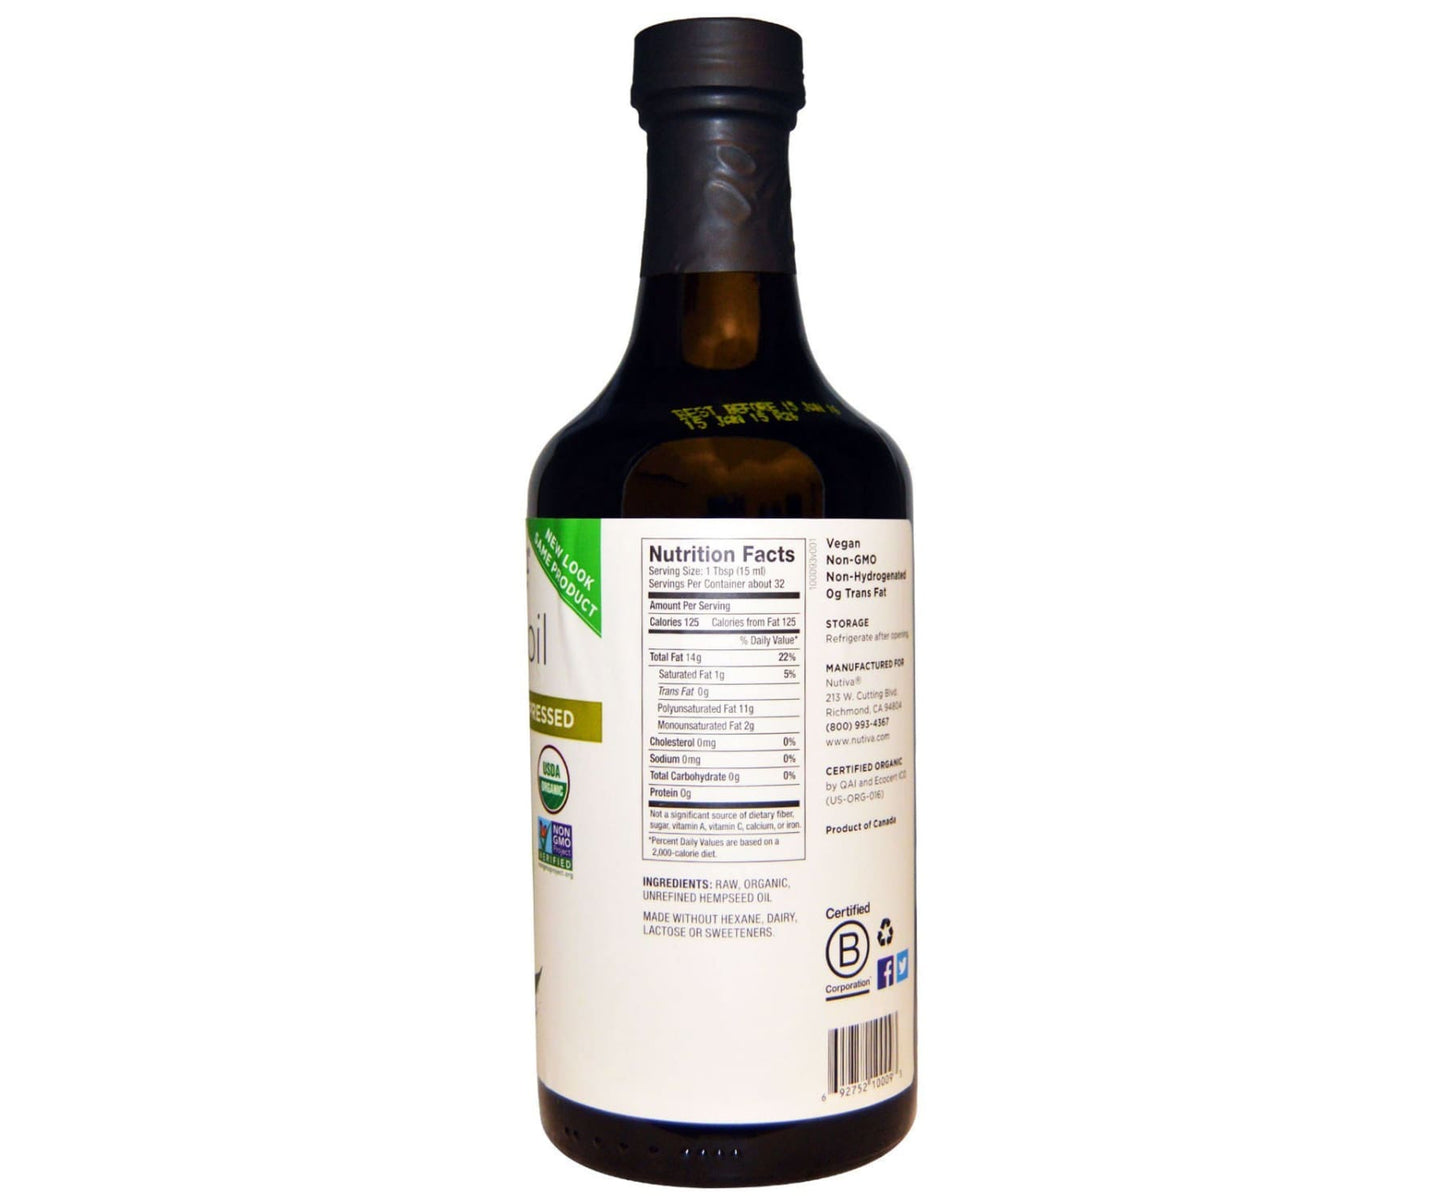 Hanf und Hemp - Nutiva Bio Hanföl kaltgepresst - 473ml - Küche